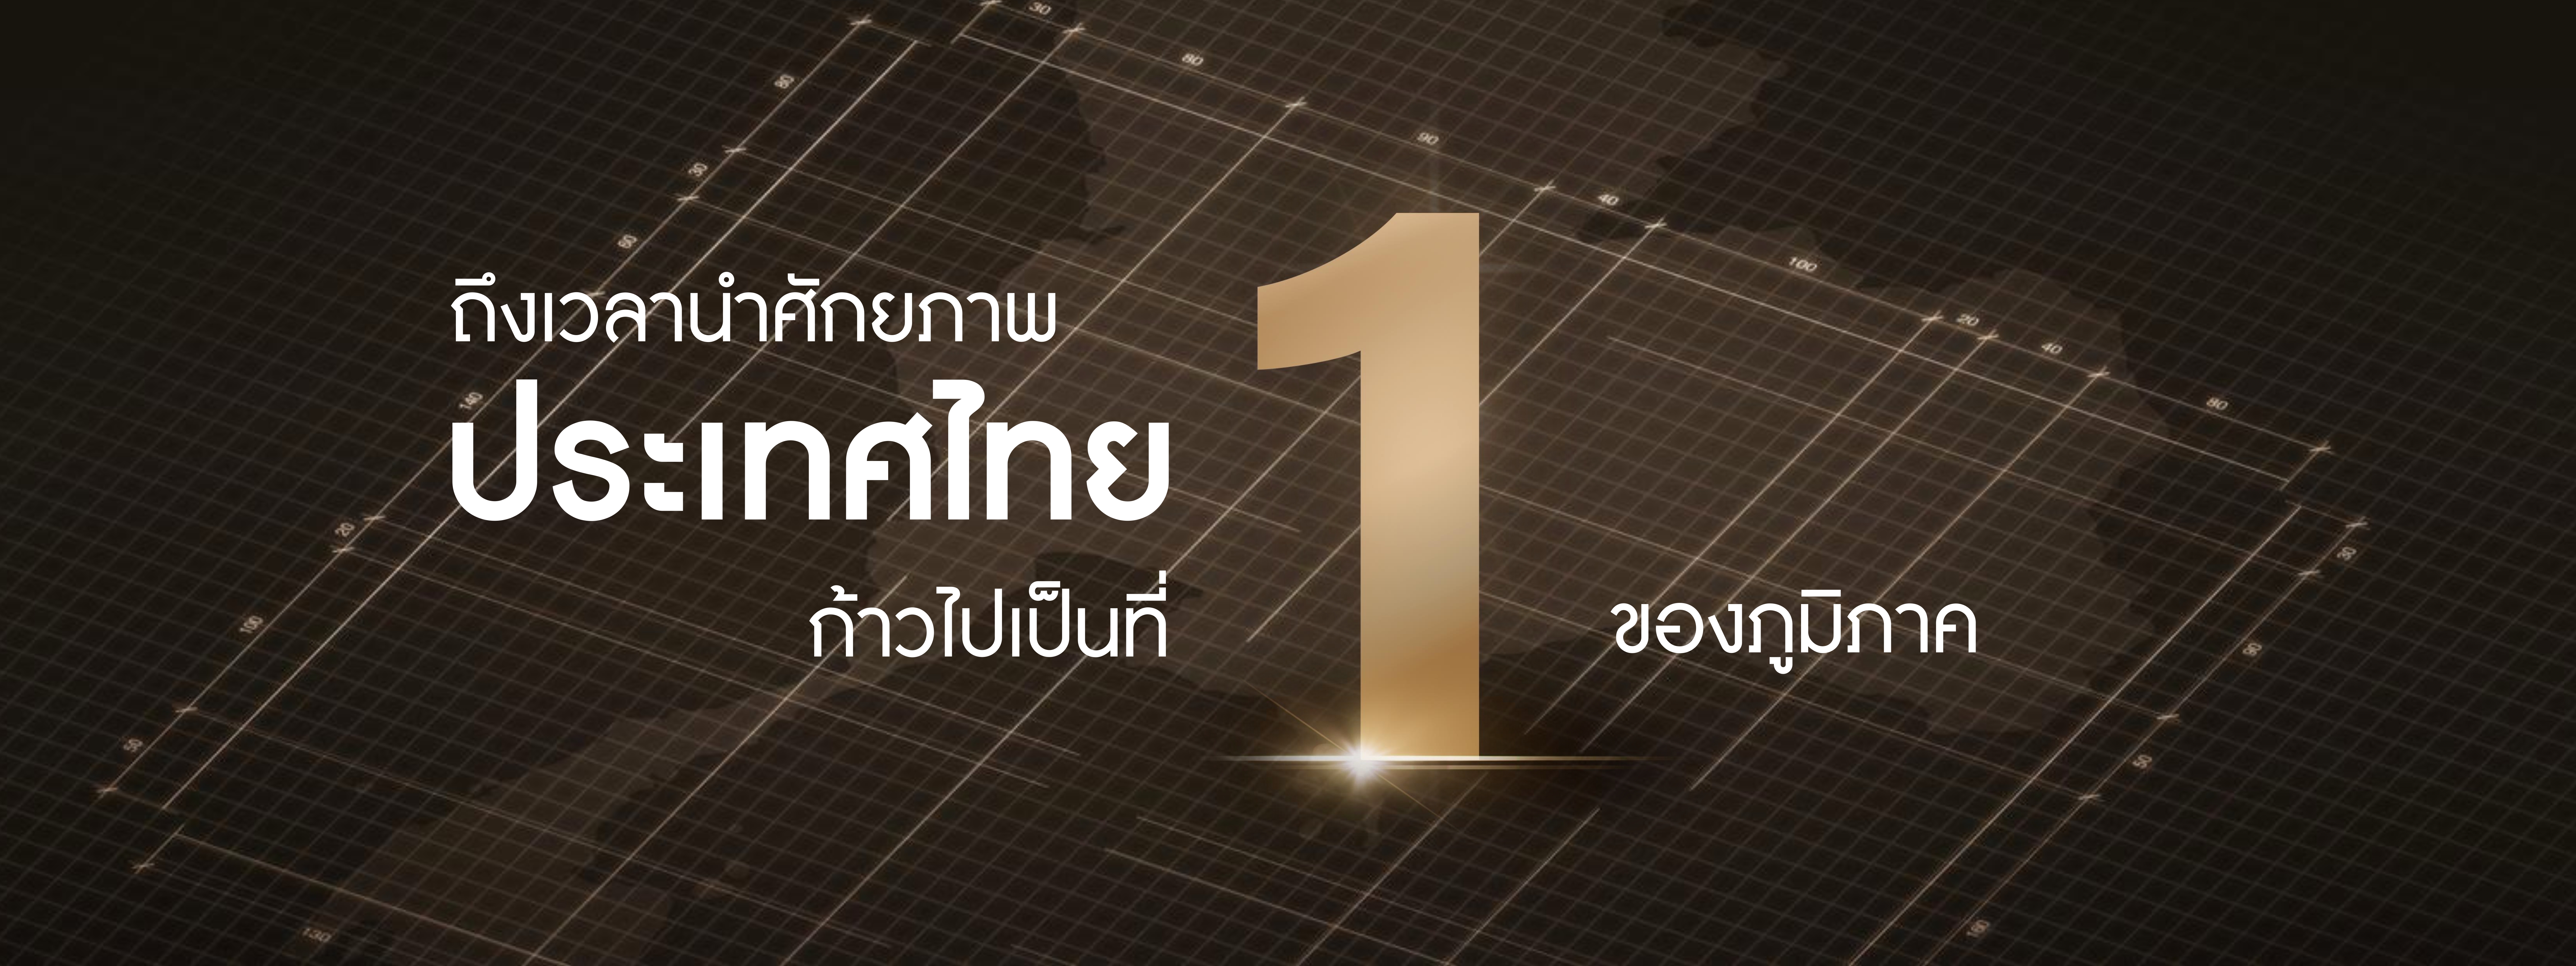 นายกฯ เศรษฐา ประกาศวิสัยทัศน์  Thailand Vision “IGNITE THAILAND จุดพลัง รวมใจ ไทยต้องเป็นหนึ่ง”  ยกระดับประเทศไทยสู่ศูนย์กลางเมืองแห่งอุตสาหกรรมระดับโลก